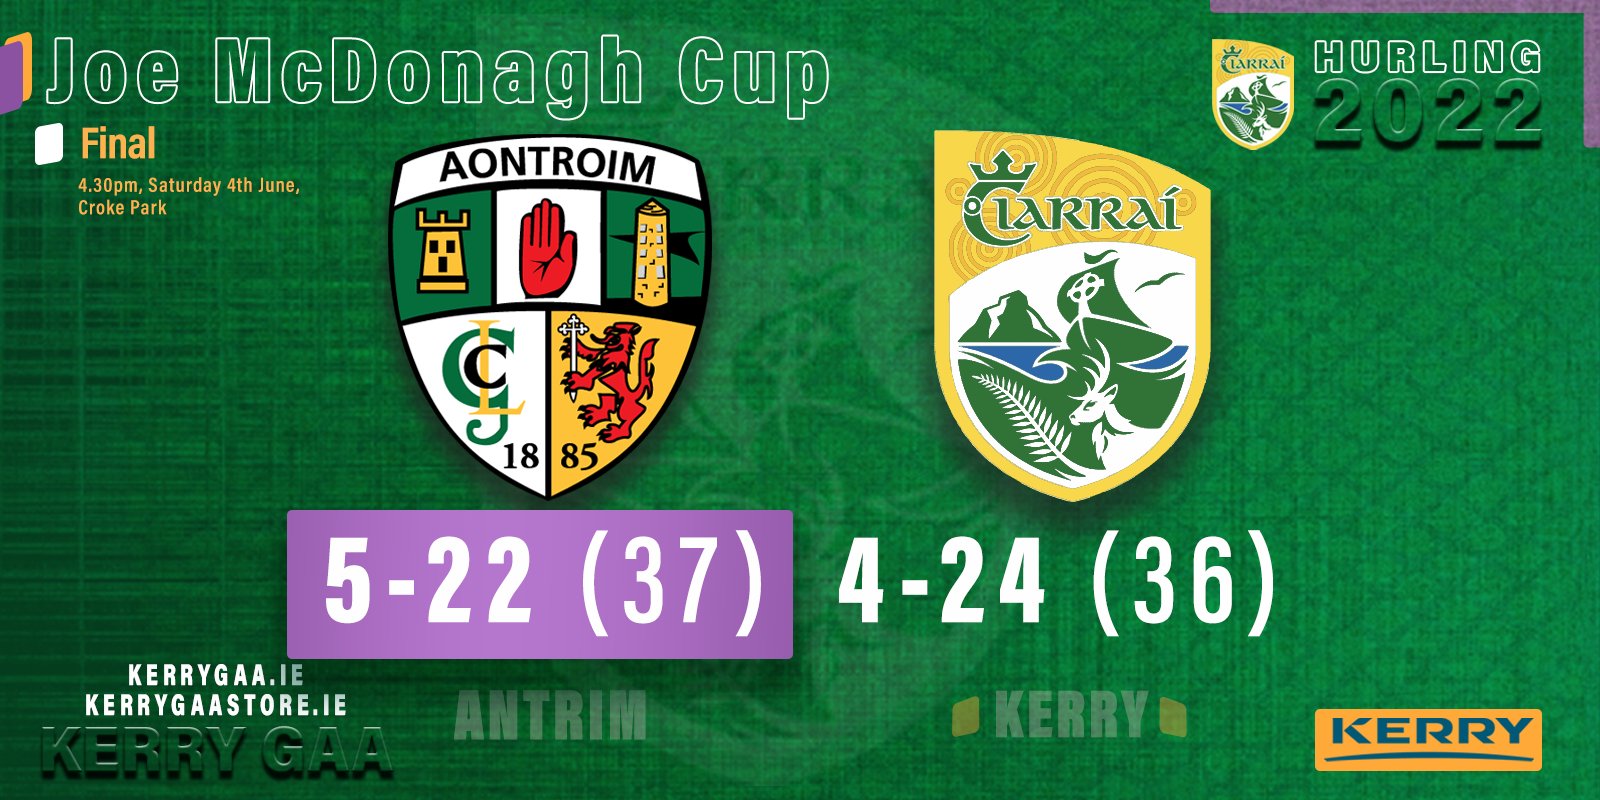 Heartbreak for Kerry in Joe McDonagh Cup Final